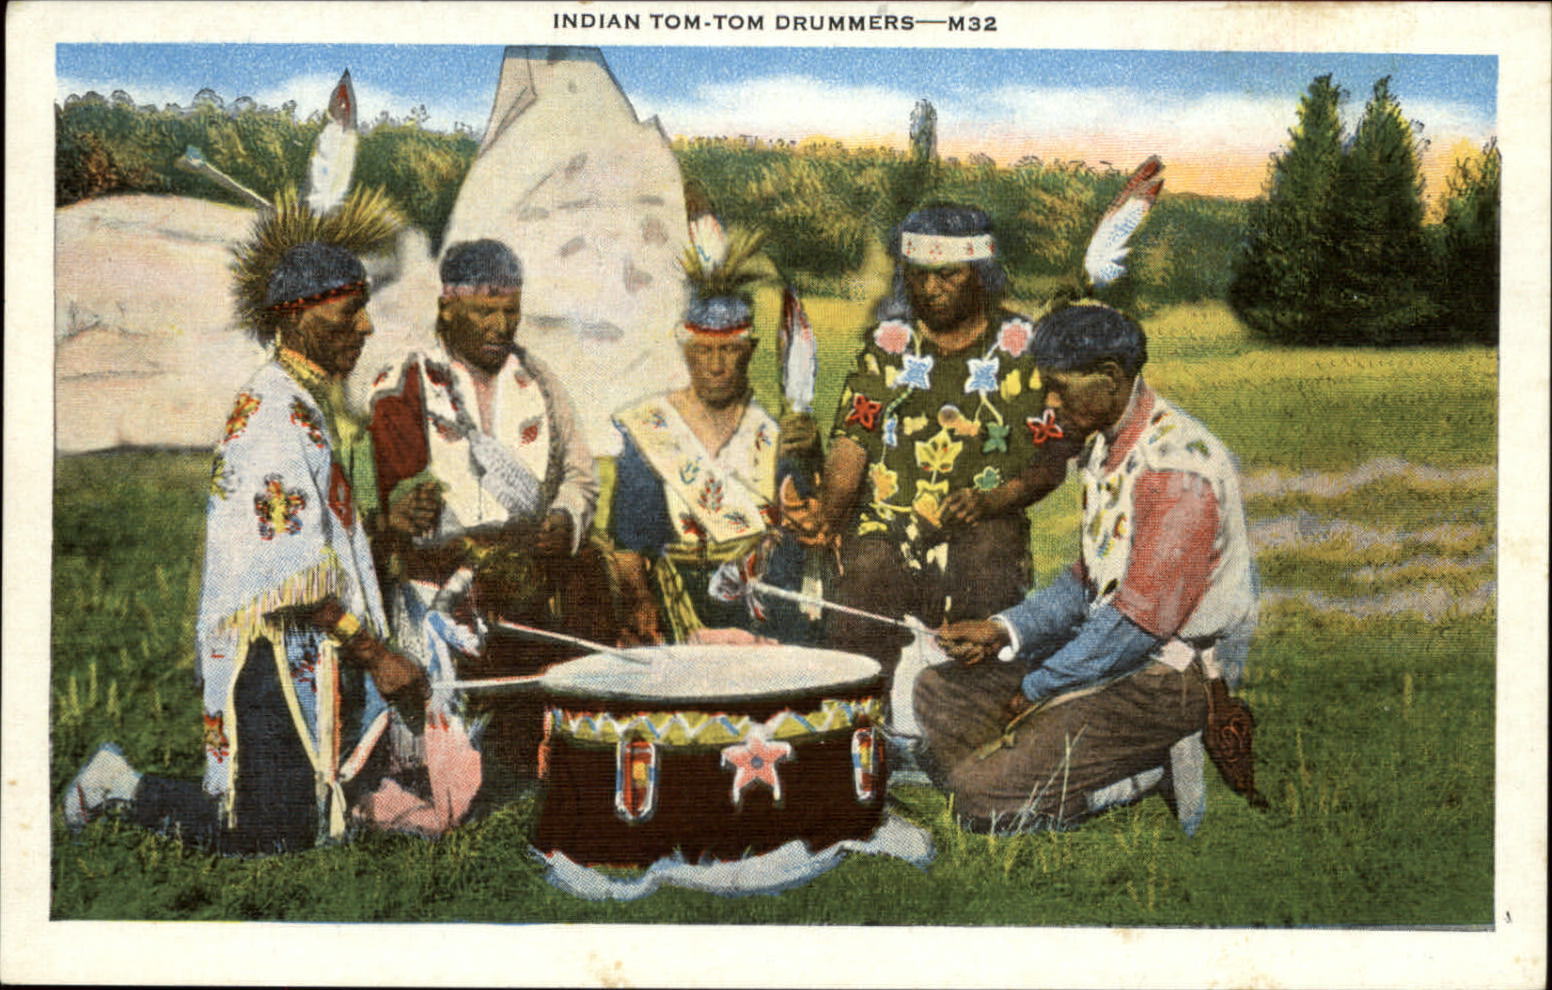 Indian Tom-Tom Drummers regalia attire 1920s unused linen vintage postcard